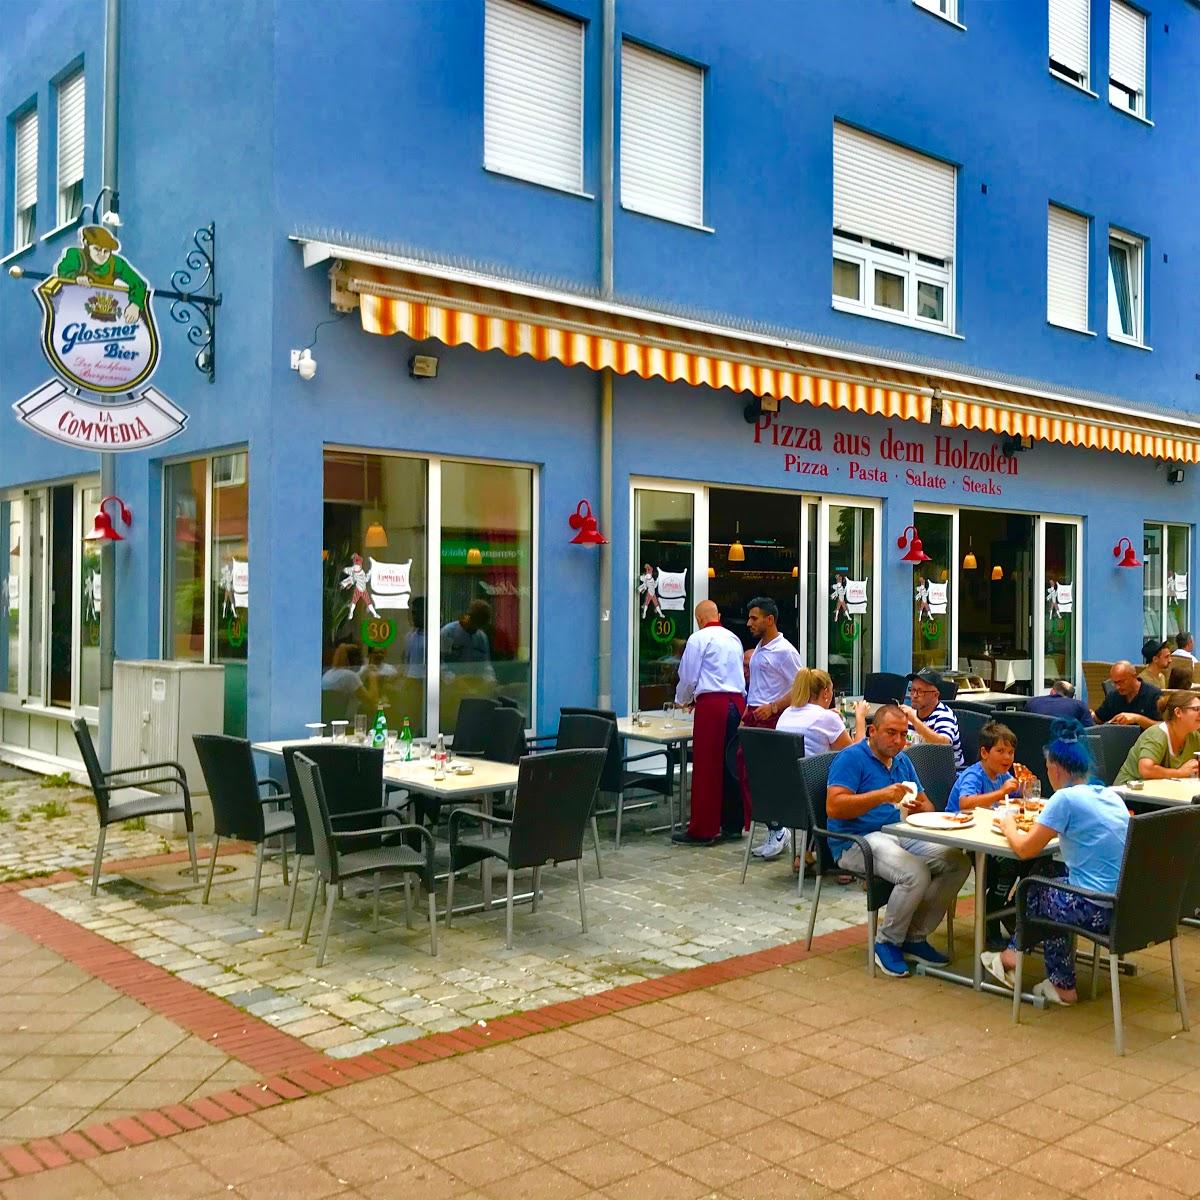 Restaurant "La Commedia Pizzeria Restaurant" in Nürnberg